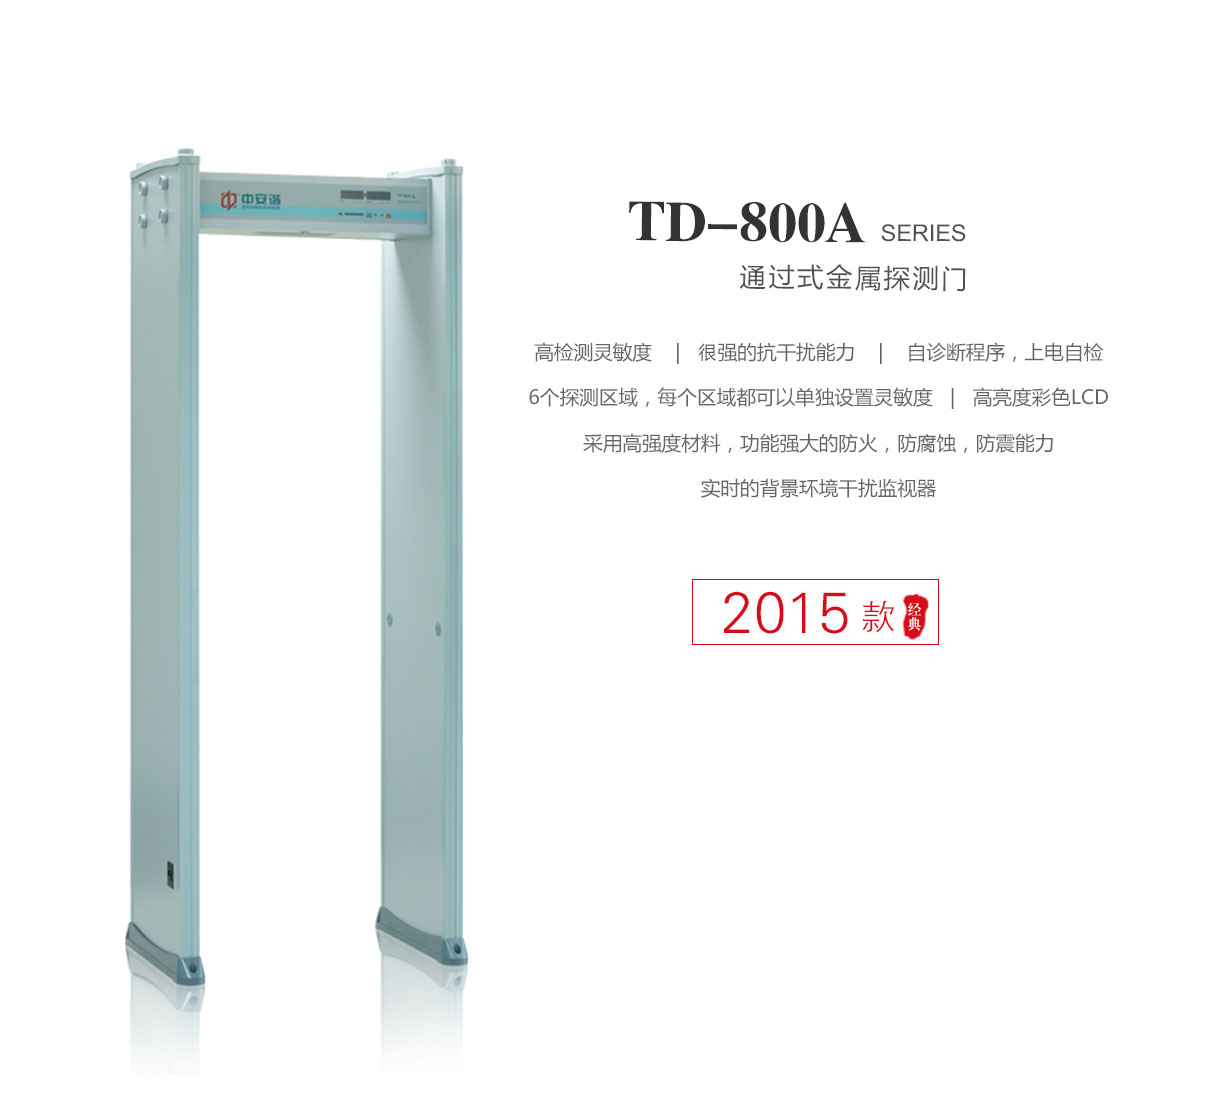 TD-800A,超值经济款,定制,安检门,金属探测门,产品